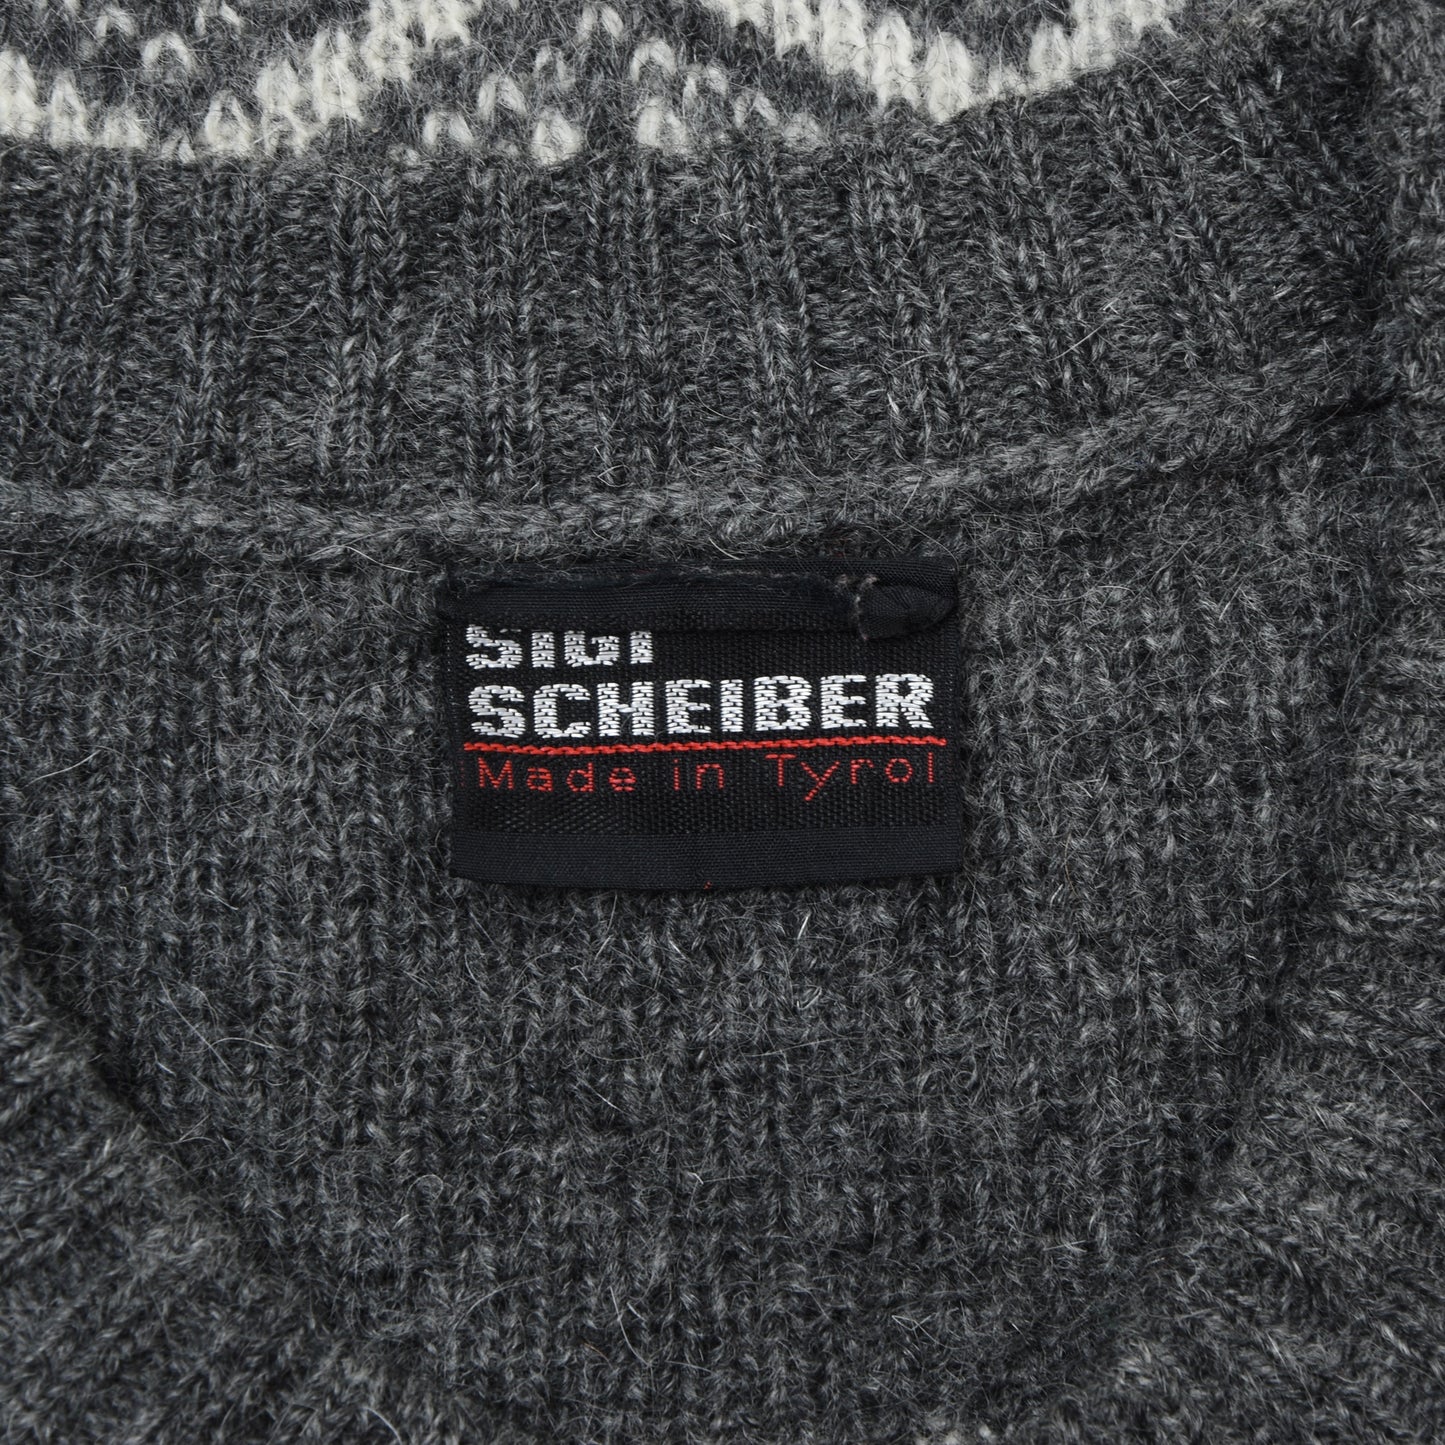 Sigi Scheiber Vintage Wool Cardigan Sweater/Jacket ca. 54.5 Chest